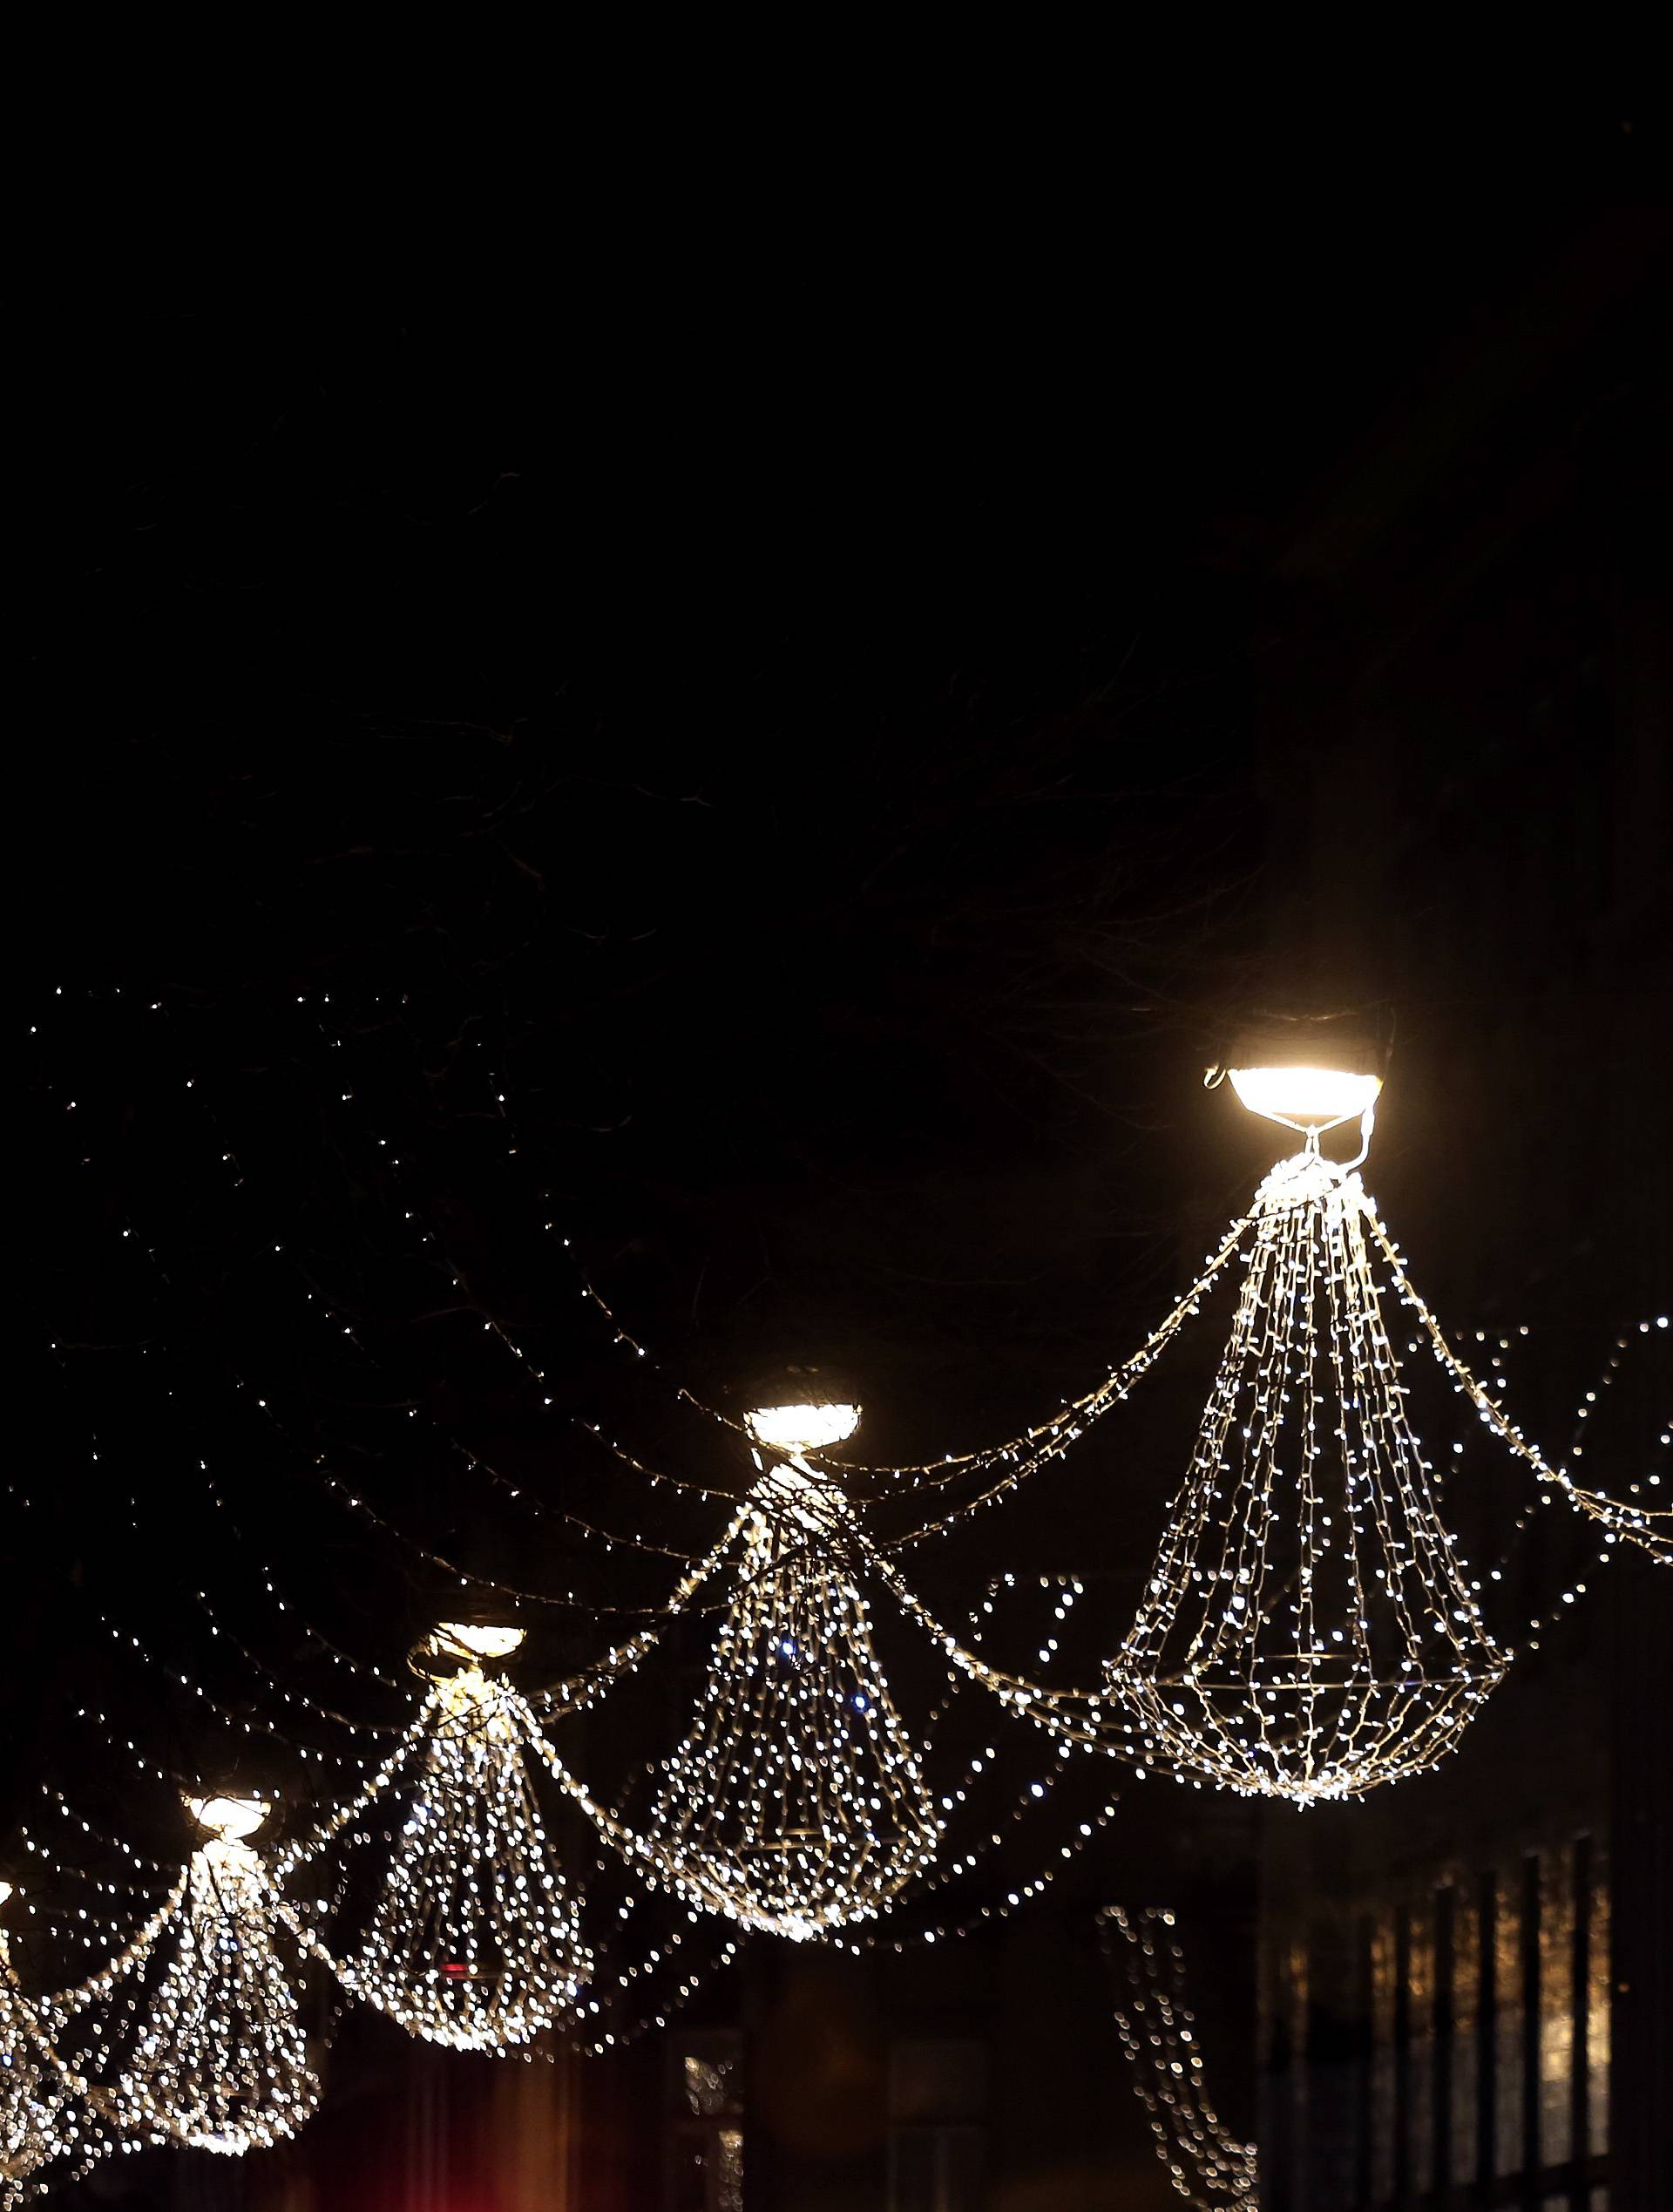 Mjere štednje, a u Zagrebu i dalje gore adventske lampice?